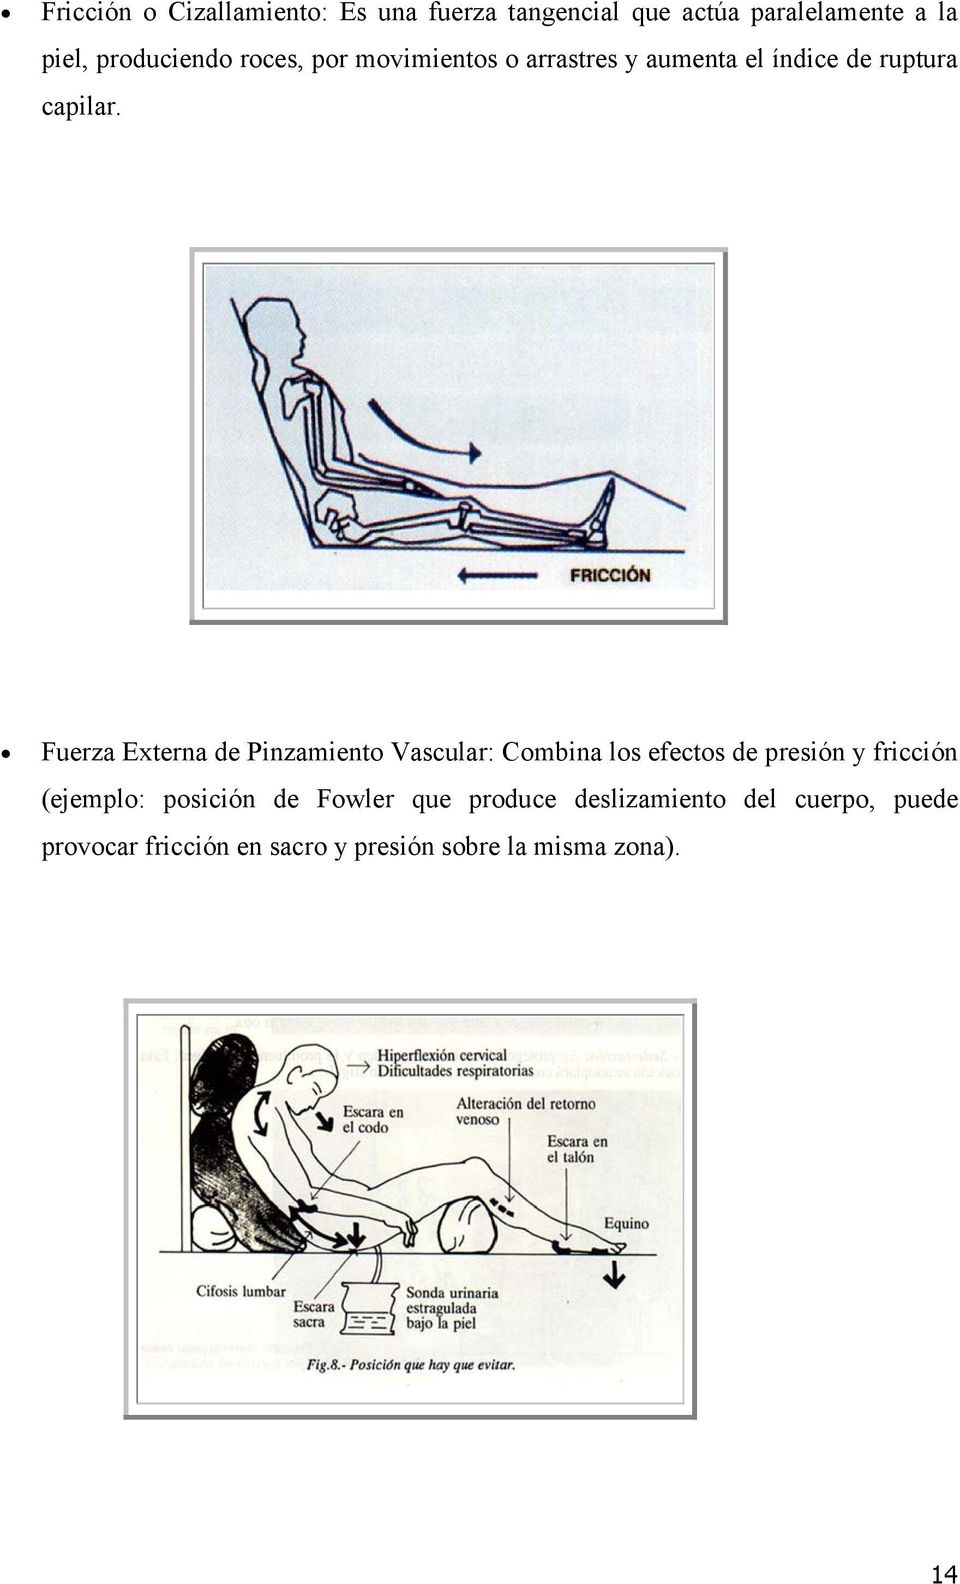 Fuerza Externa de Pinzamiento Vascular: Combina los efectos de presión y fricción (ejemplo: